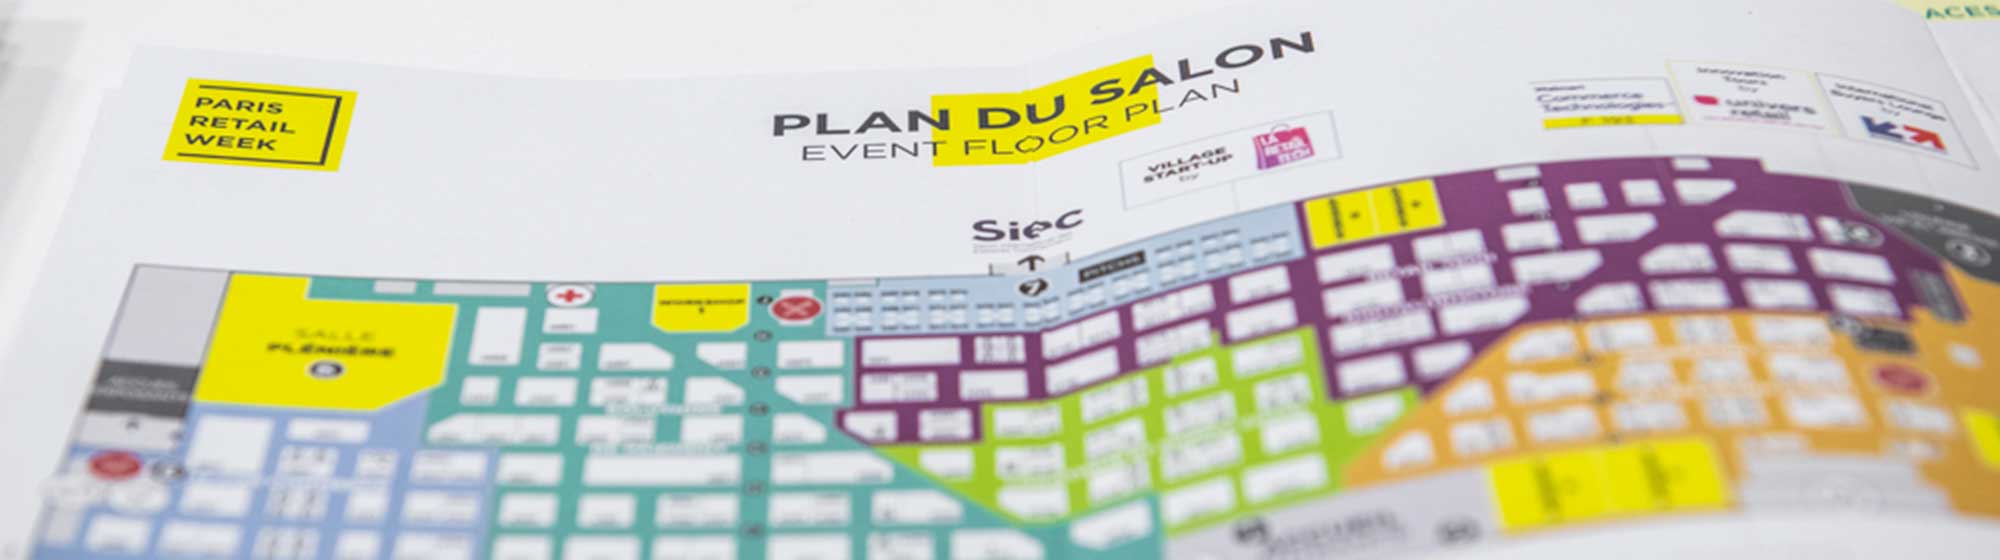 map of paris retail week